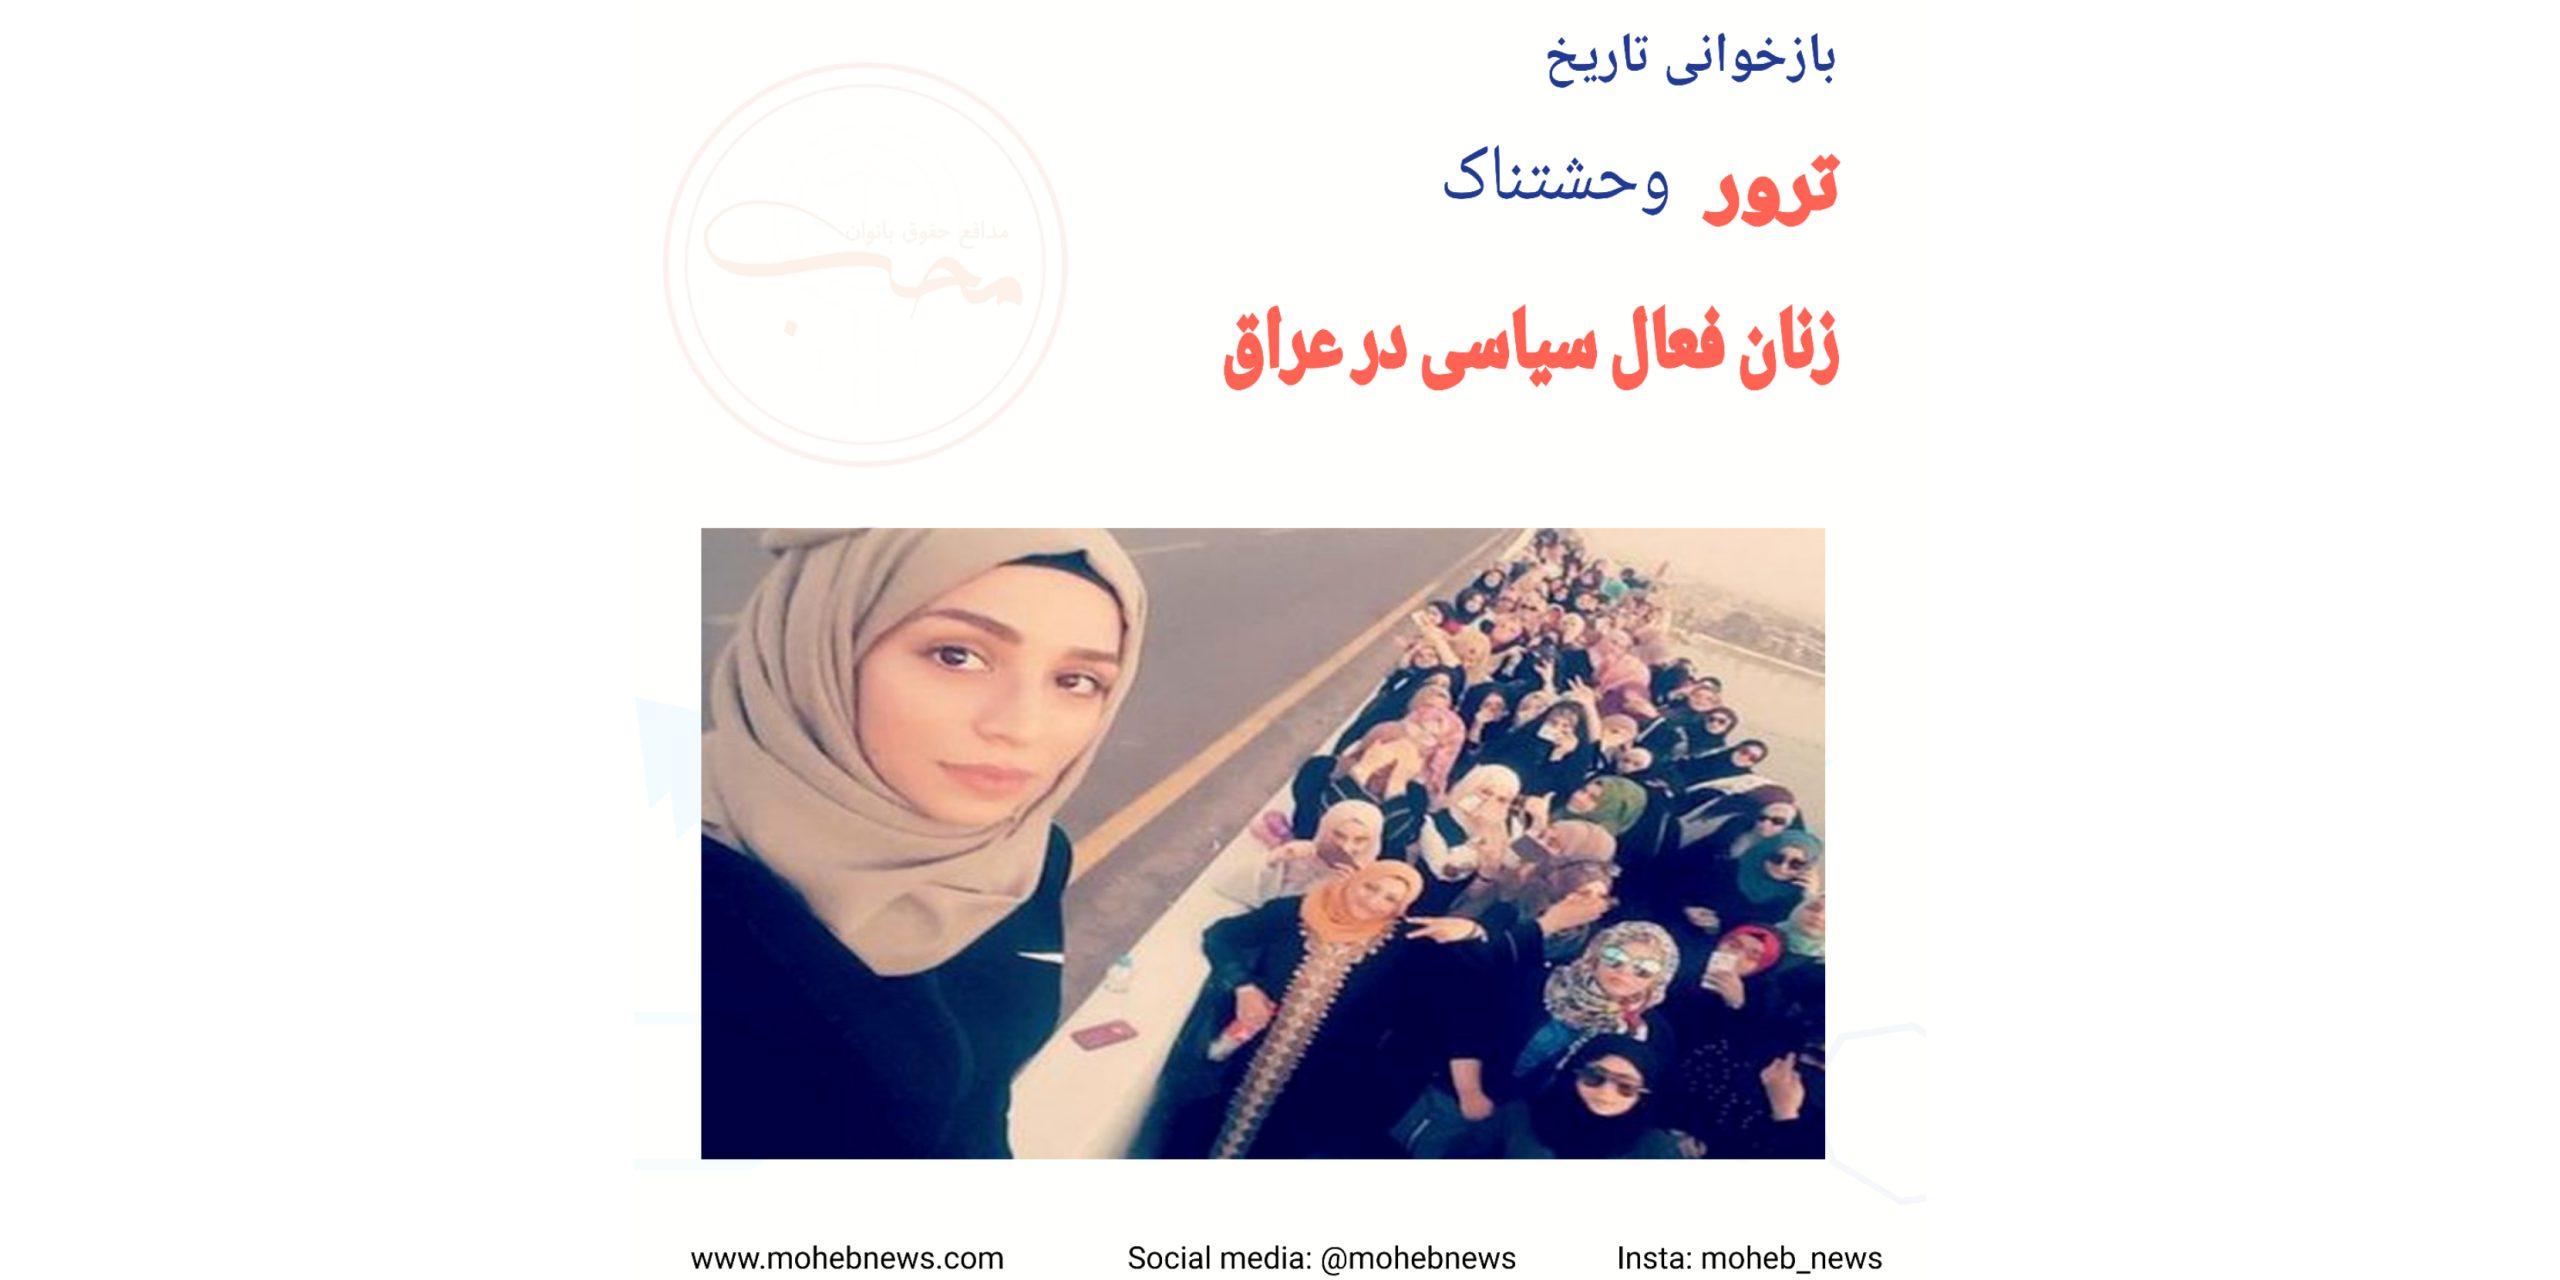 ترور زنان فعال سیاسی در بغداد عراق | محب نیوز